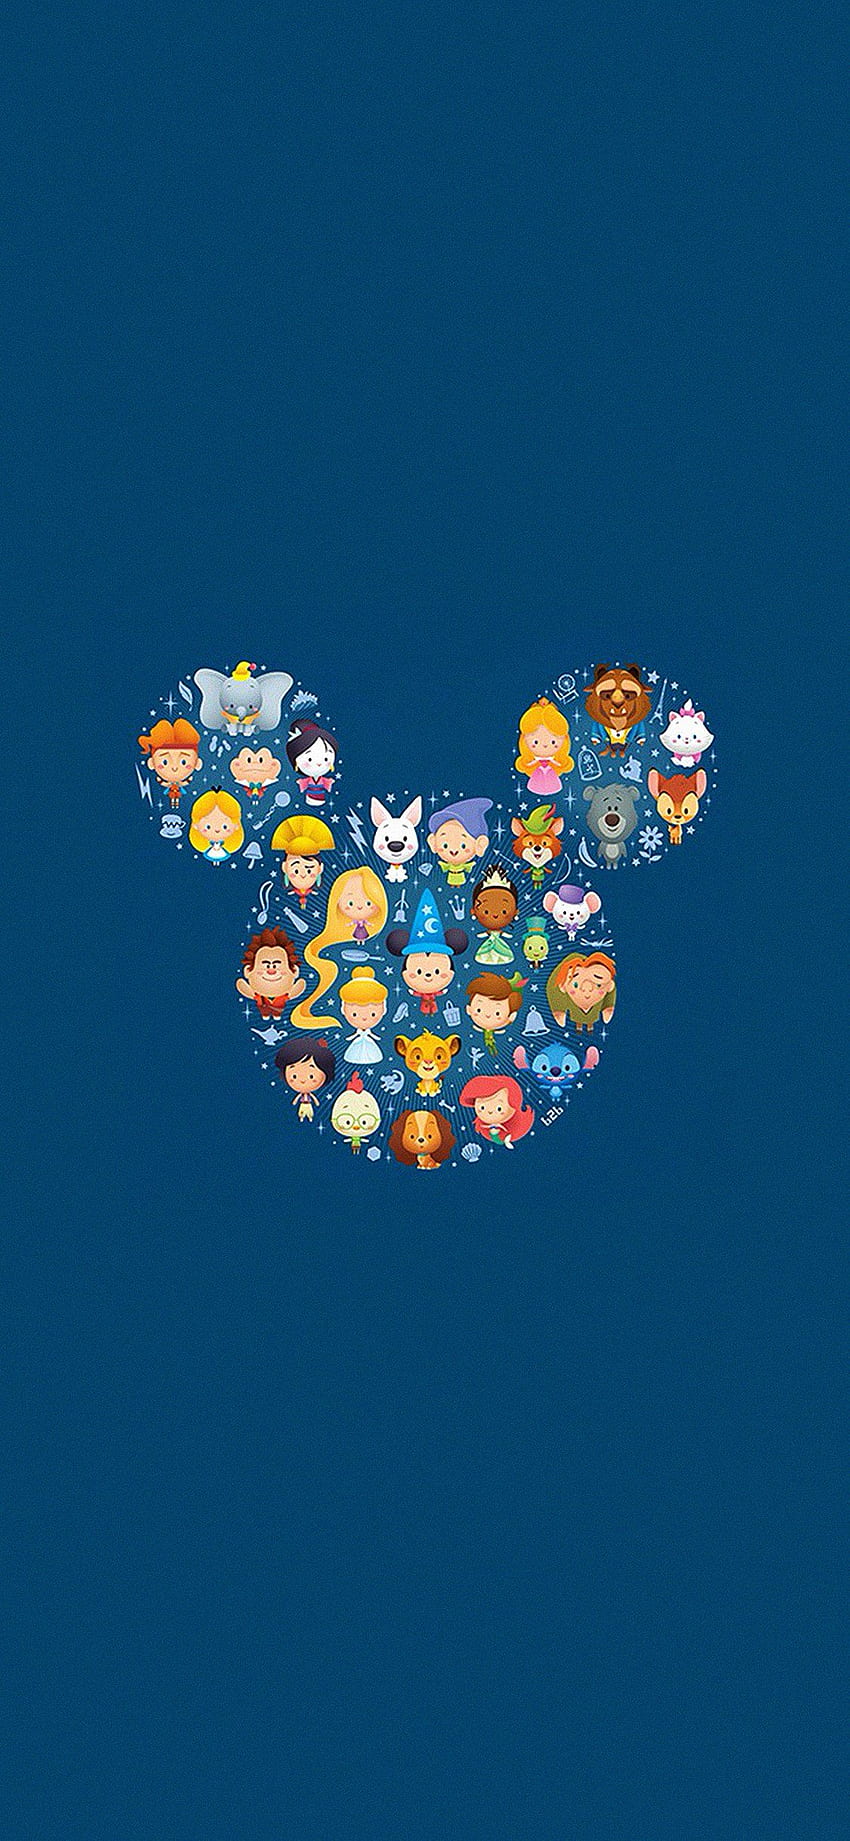 Disney art character cute iPhone X, Disney Face HD phone wallpaper ...